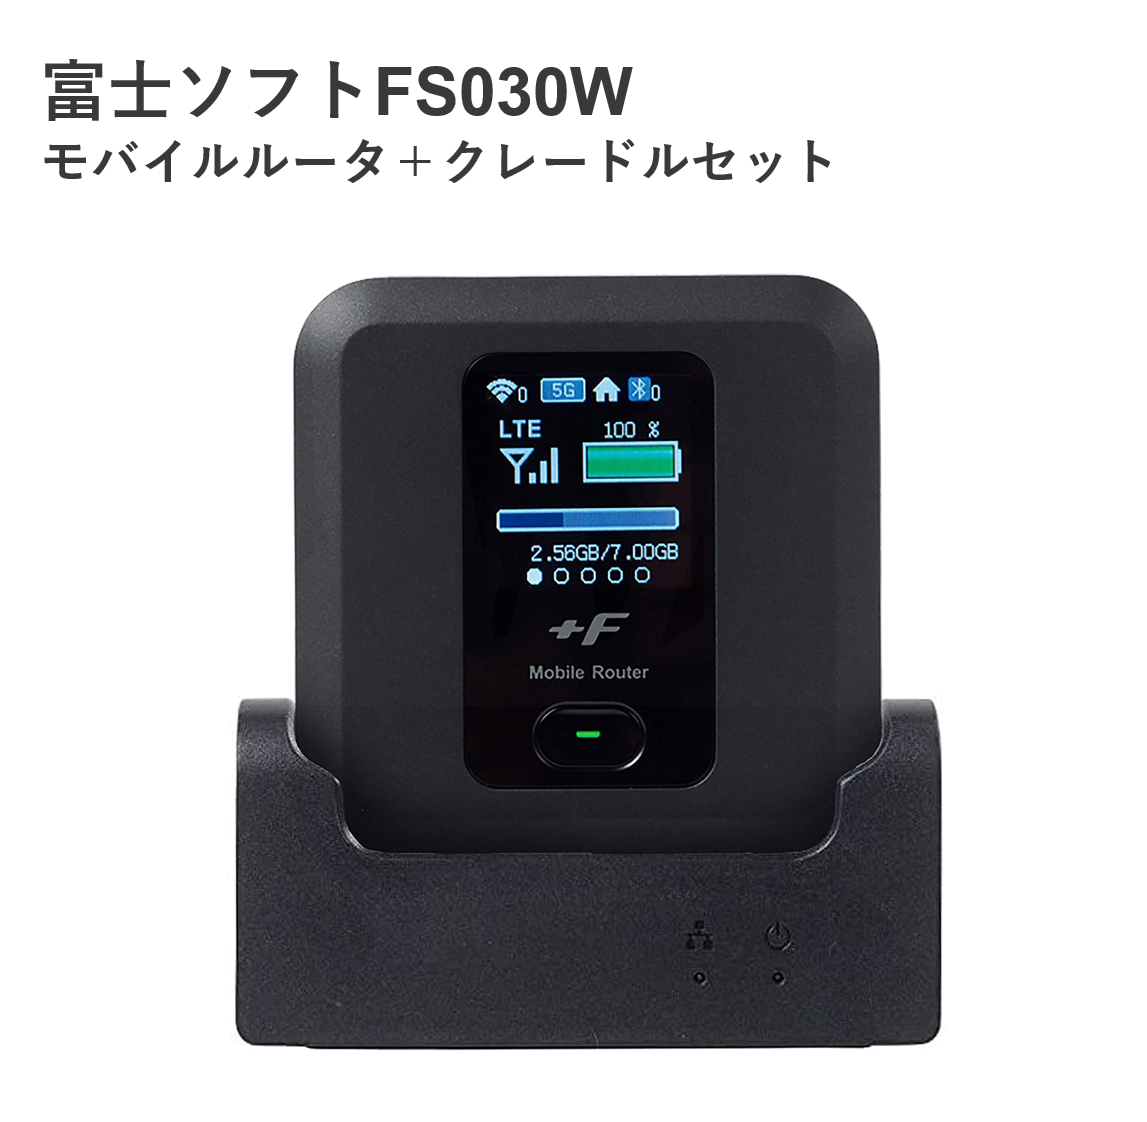 FUJISOFT  FS030W＋専用クレードル